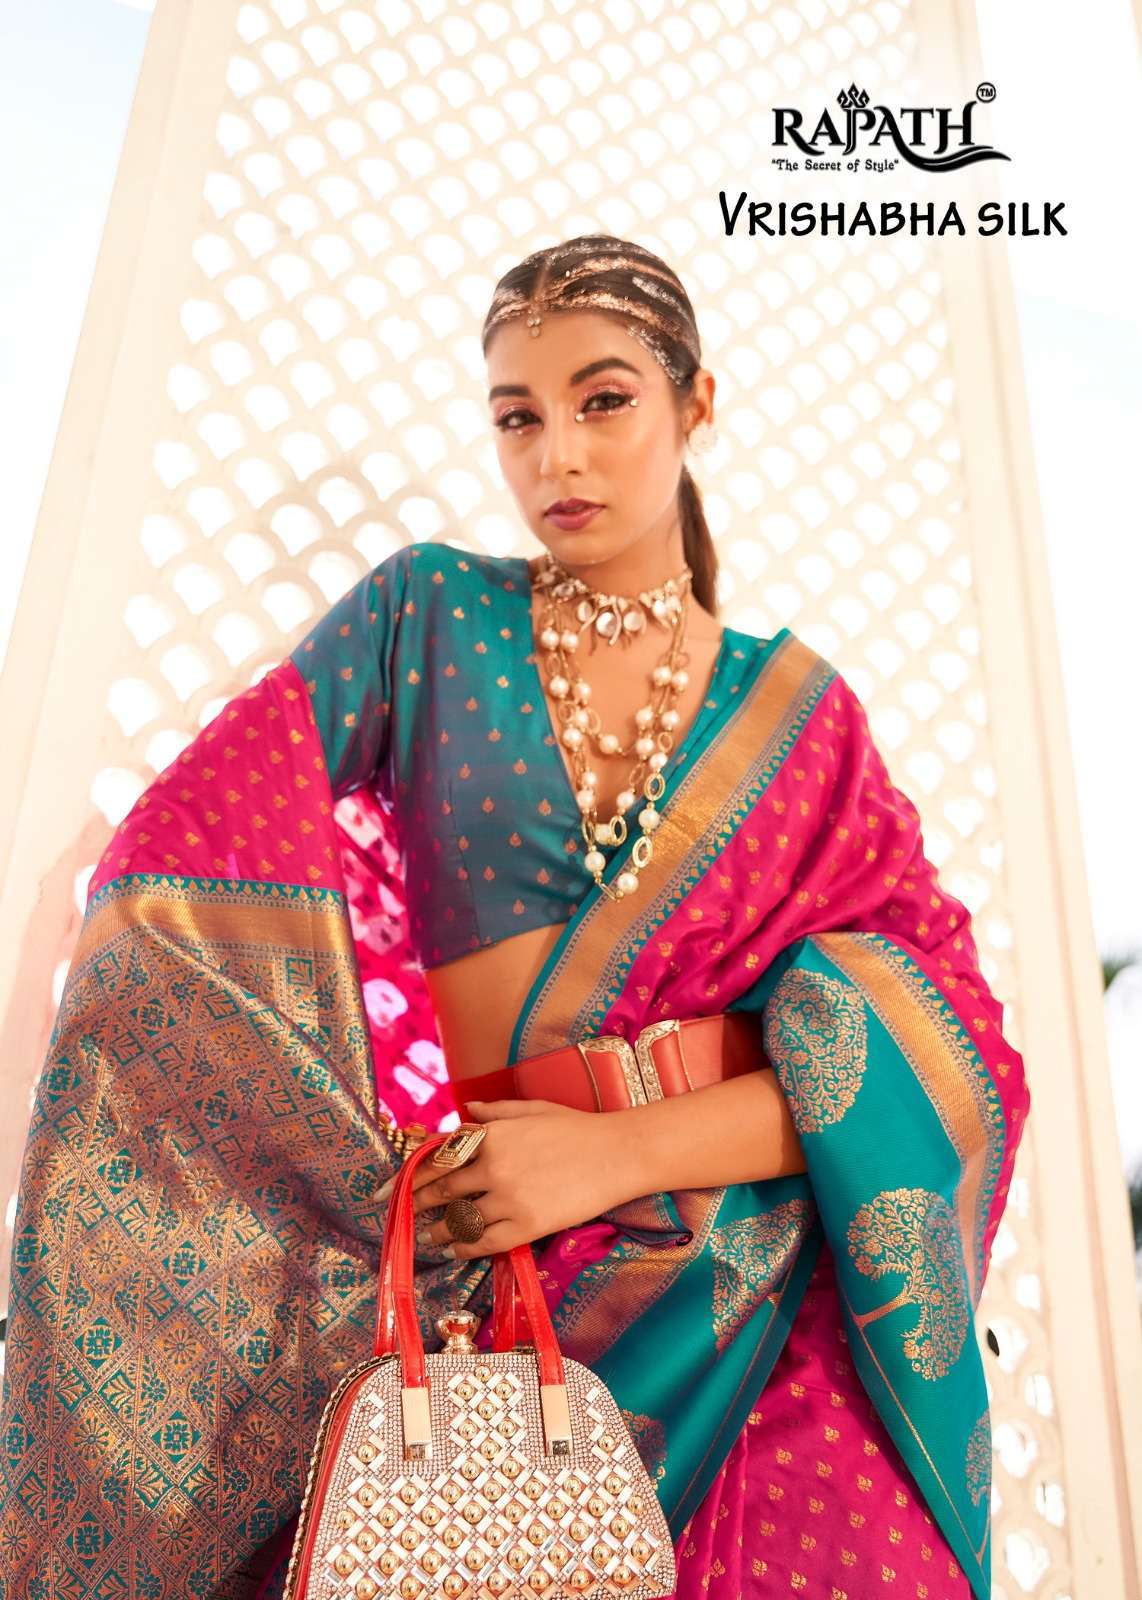 rajpath vrishabha silk series 145001-145008 Soft Banarasi Paithani saree